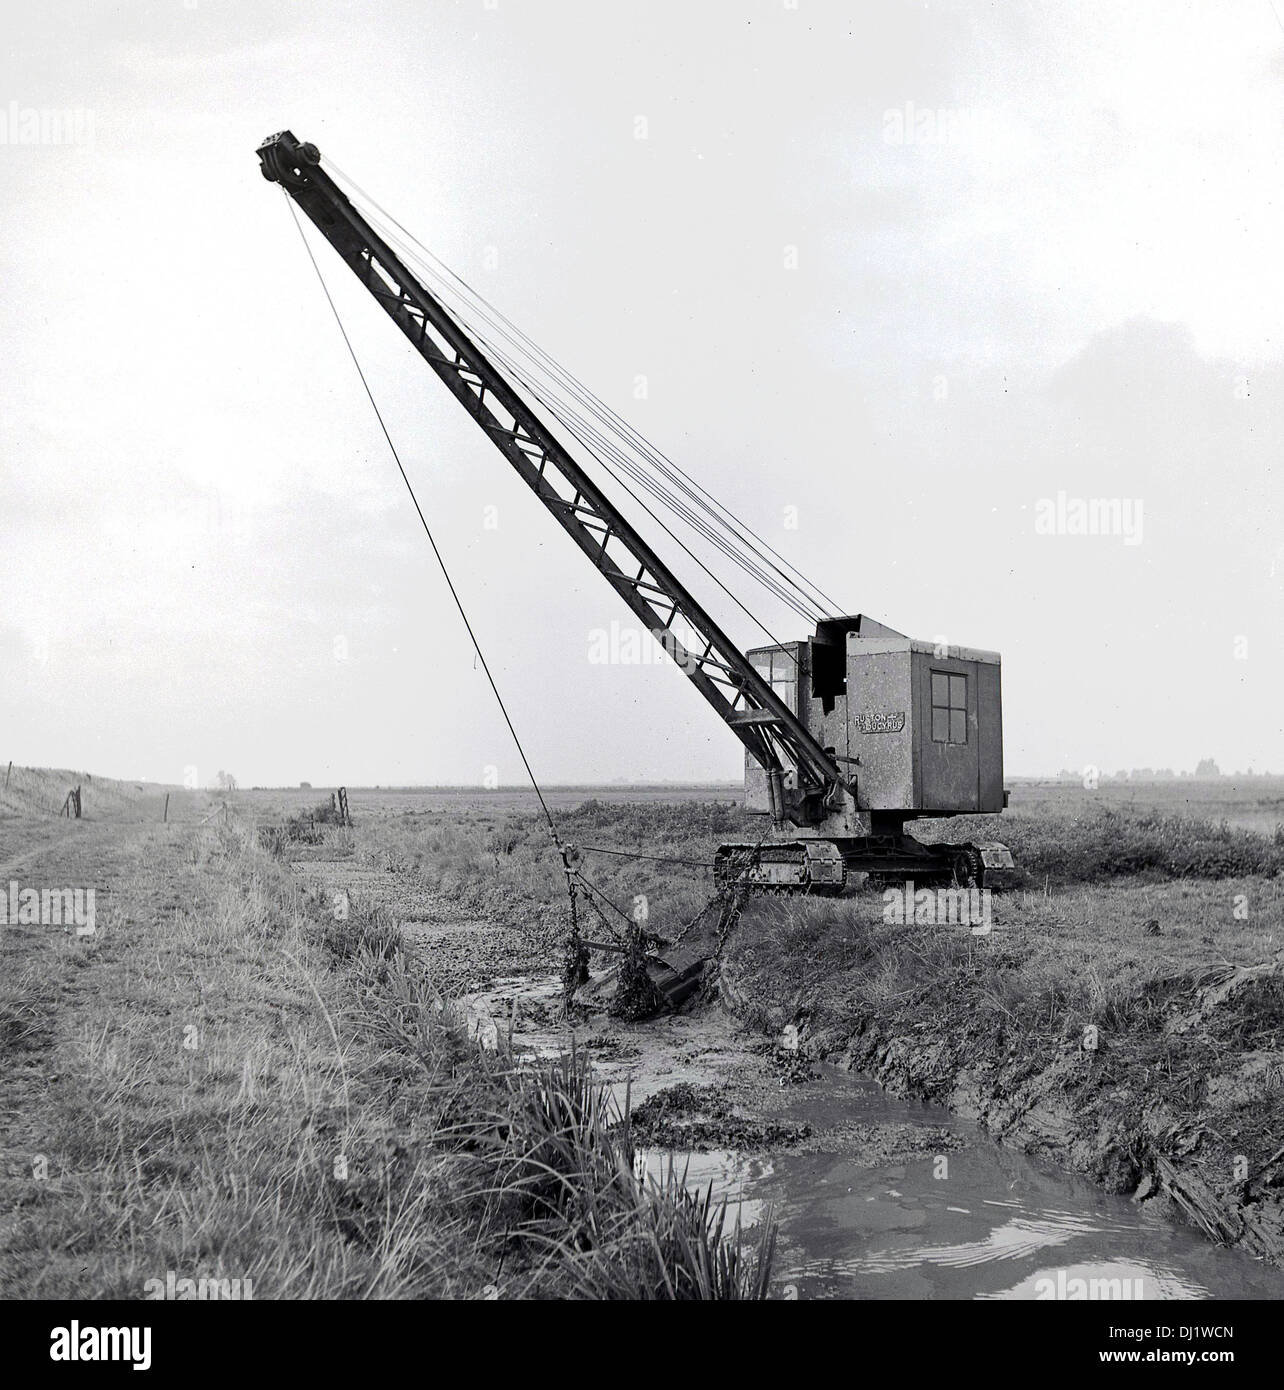 Anni '50, immagine storica di una benna meccanica per dragline su gru con cingoli posizionati in un campo di campagna, scavando terra o fango da un piccolo fiume o ruscello che corre accanto ad esso, Inghilterra, Regno Unito. Foto Stock